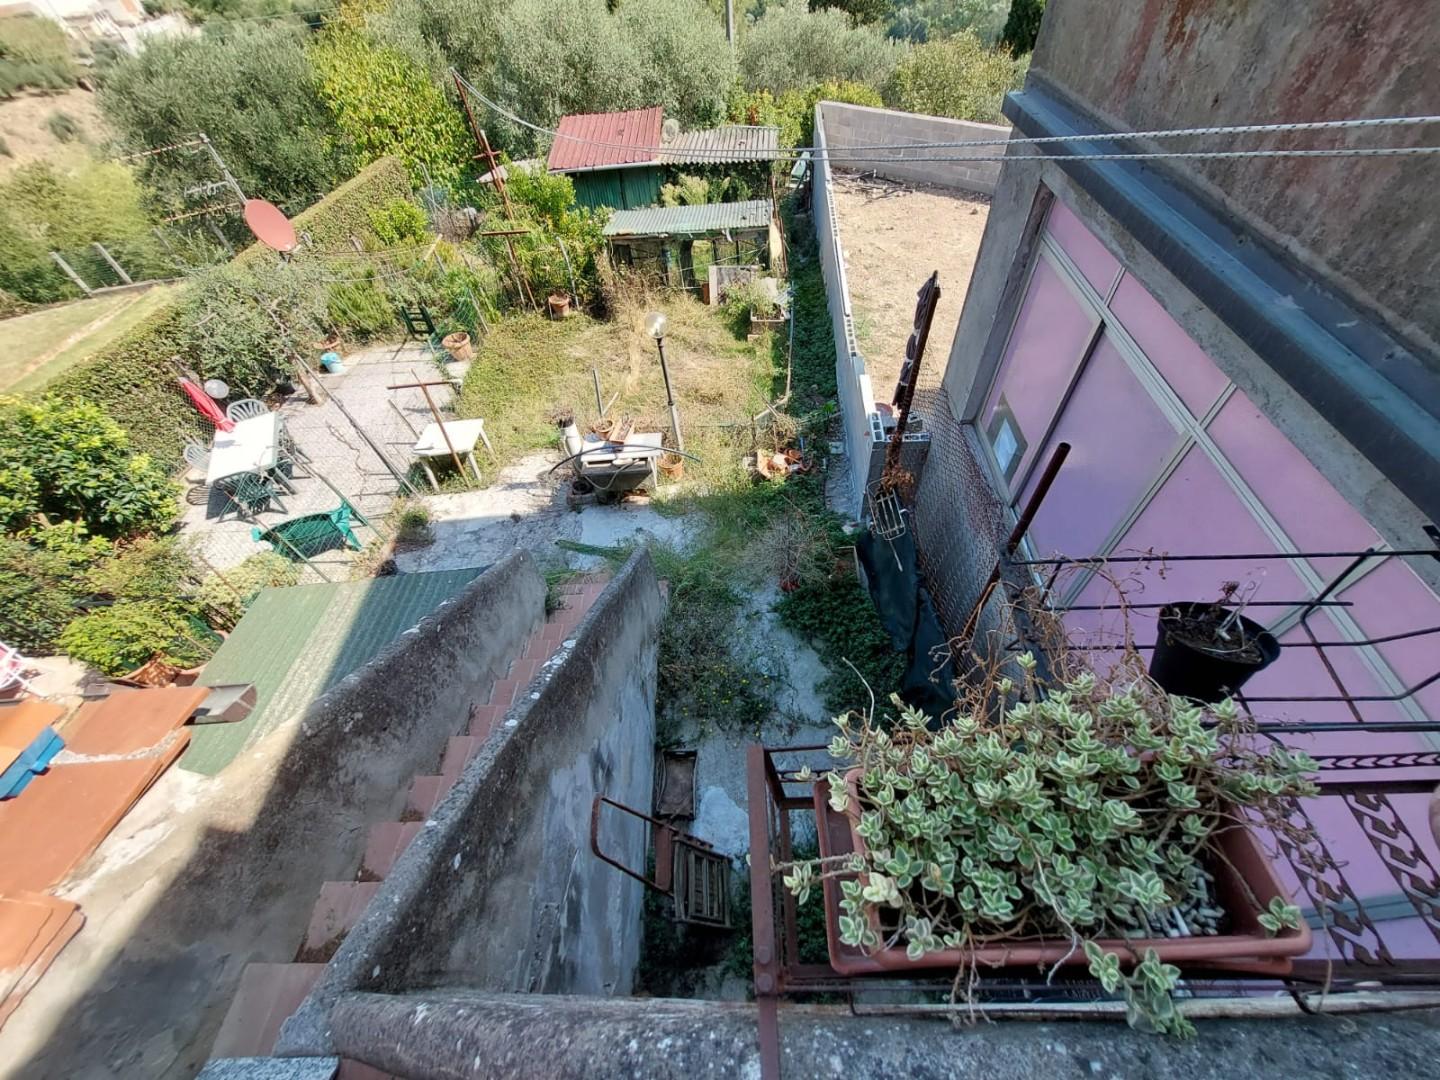 Appartamento in vendita a Montopoli in Val d'Arno